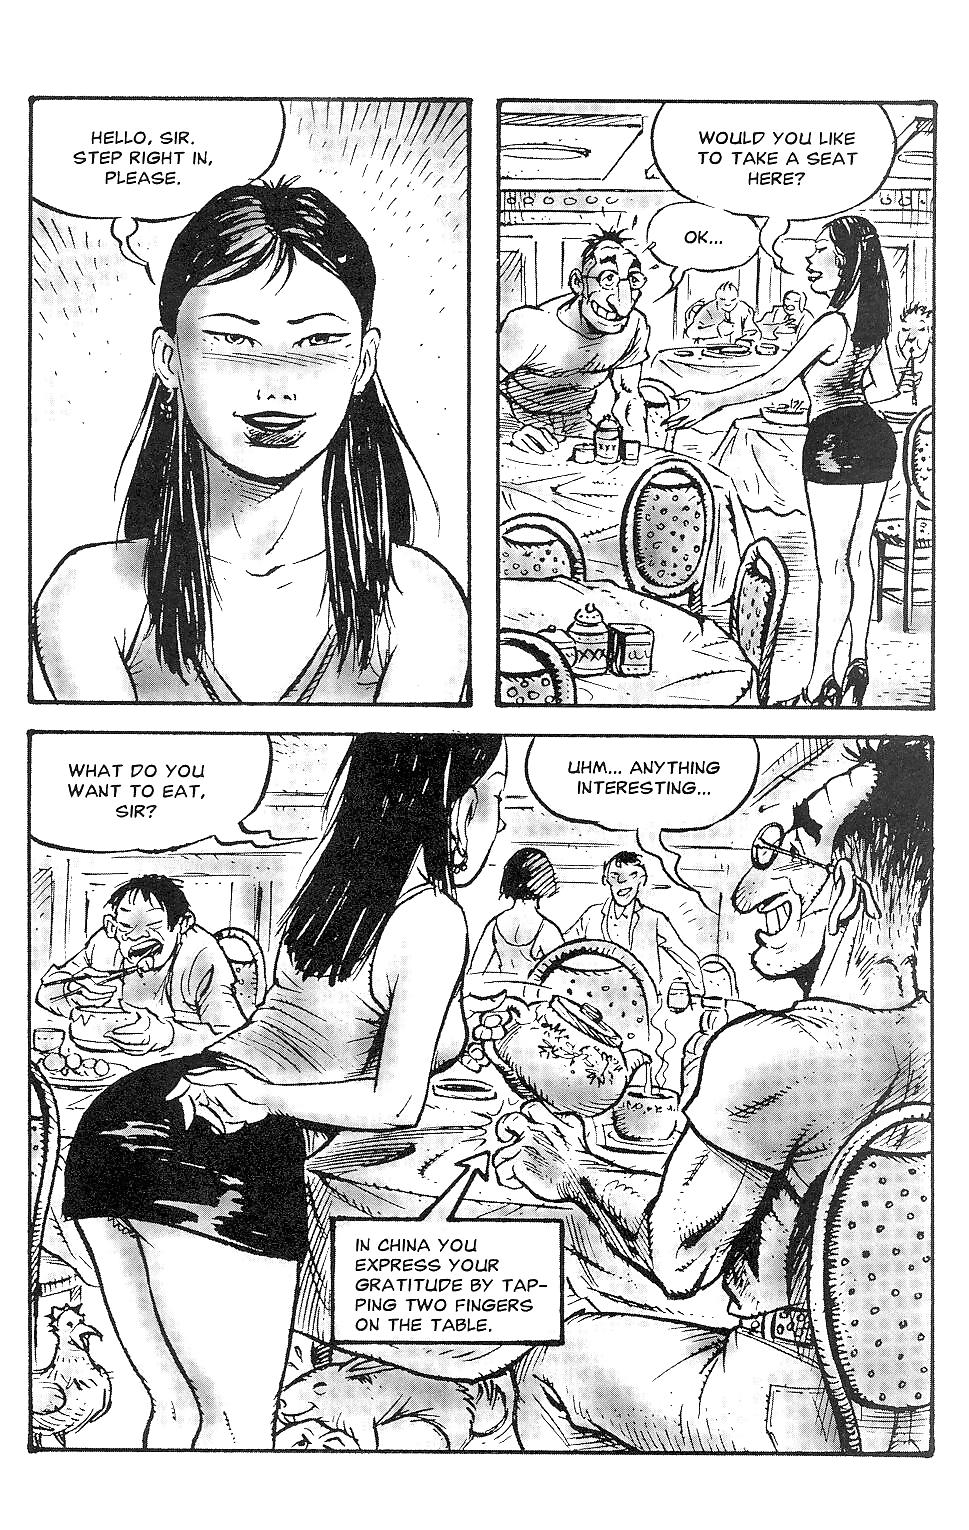 Orientierungen Sexuelle Belästigung Comics #17273439